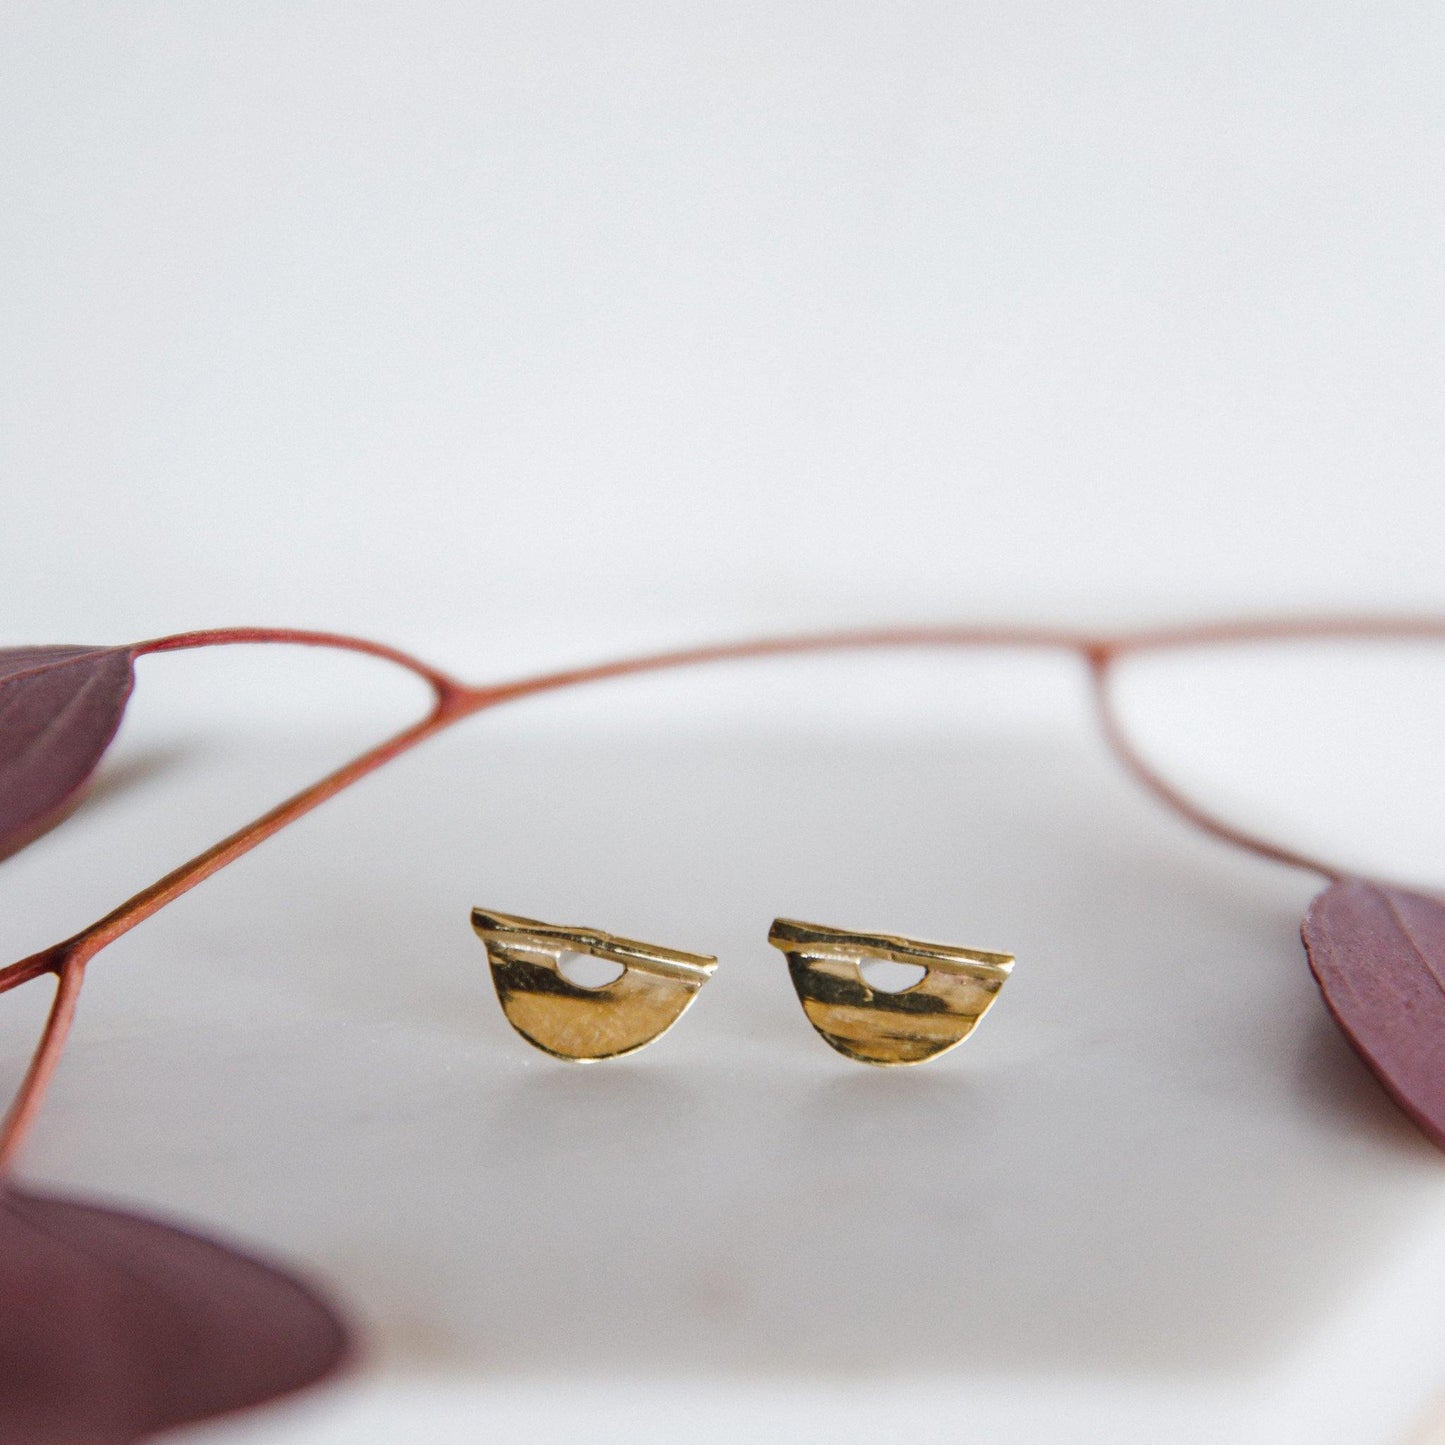 Brass or Sterling Silver stud earrings